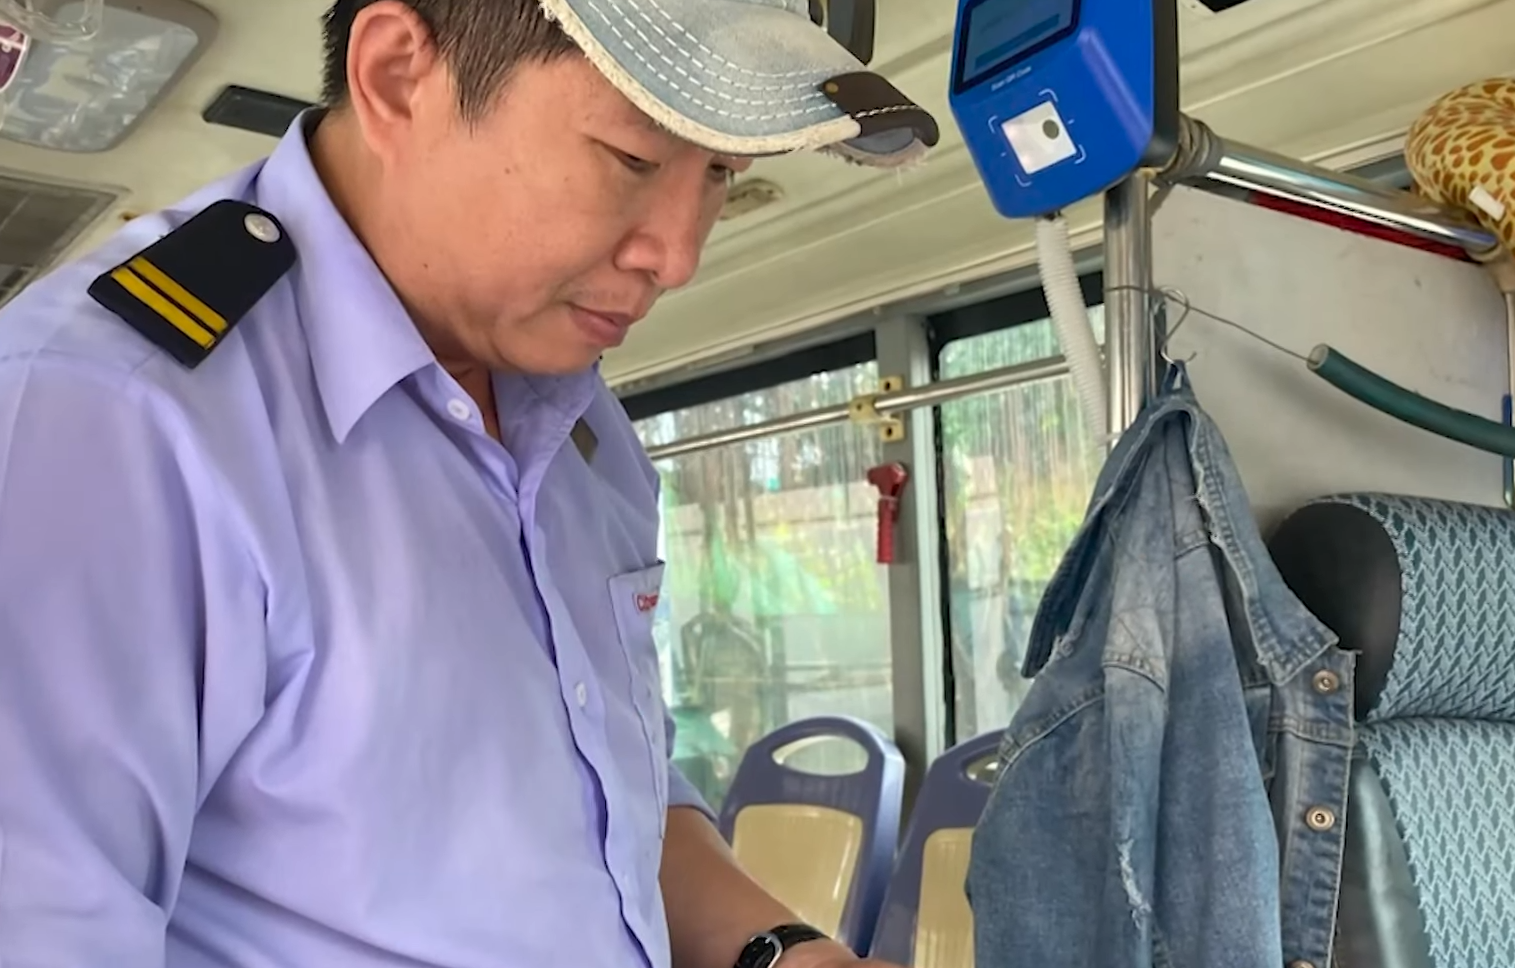 Đang làm ngân hàng thì chuyển qua lái xe buýt, tài xế 6 năm hóa "người hùng", nổi khắp Sài Gòn - Ảnh 3.